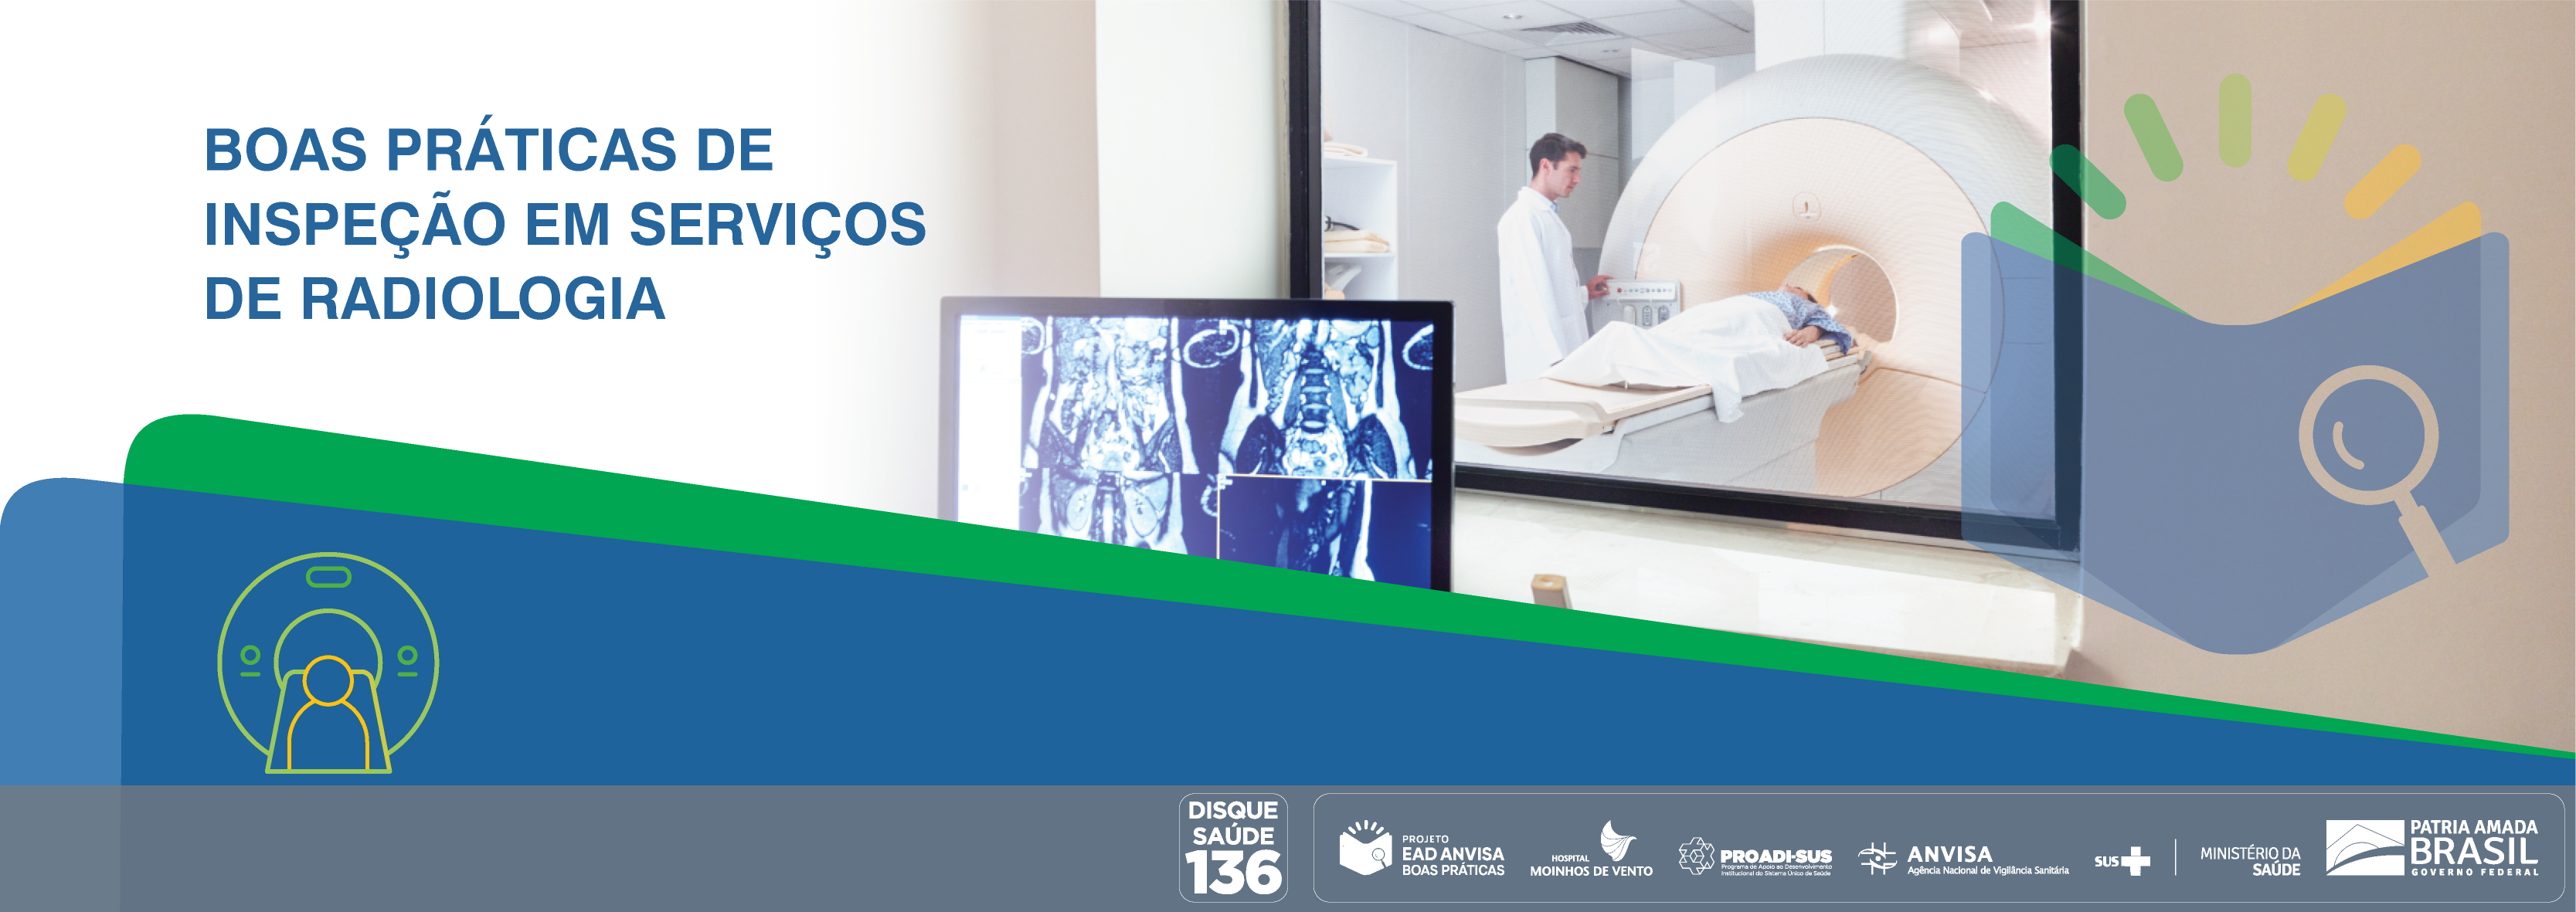 Boas Práticas de Inspeção em Serviços de Radiologia ANVISA_2021_BPISR_V2